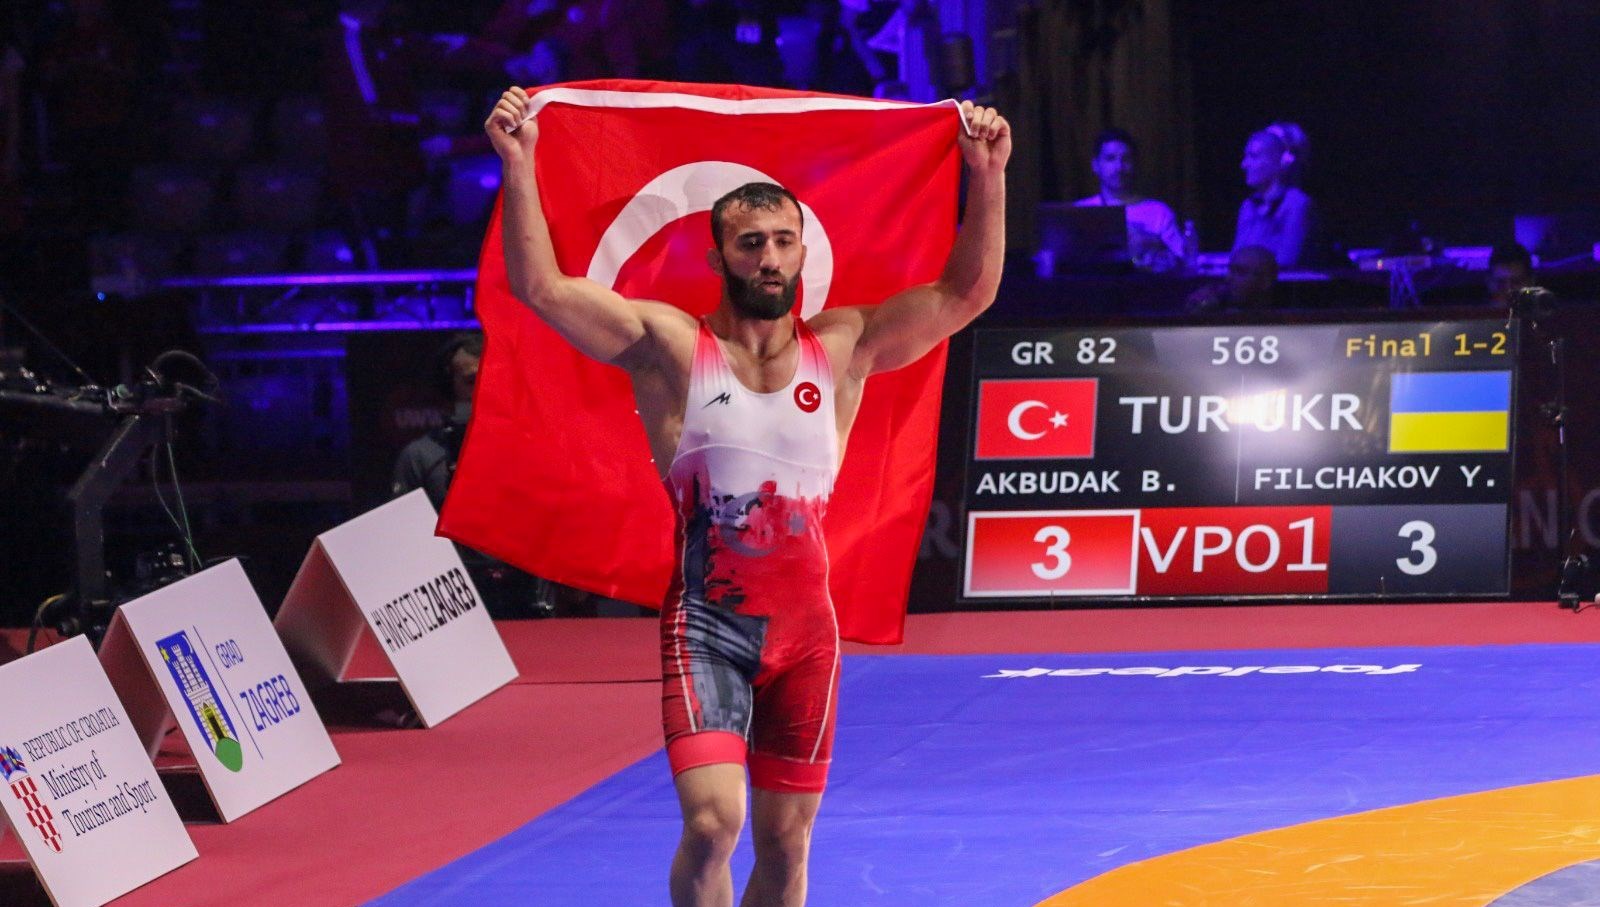 Ulusal güreşçi Burhan Akbudak, Avrupa şampiyonu oldu